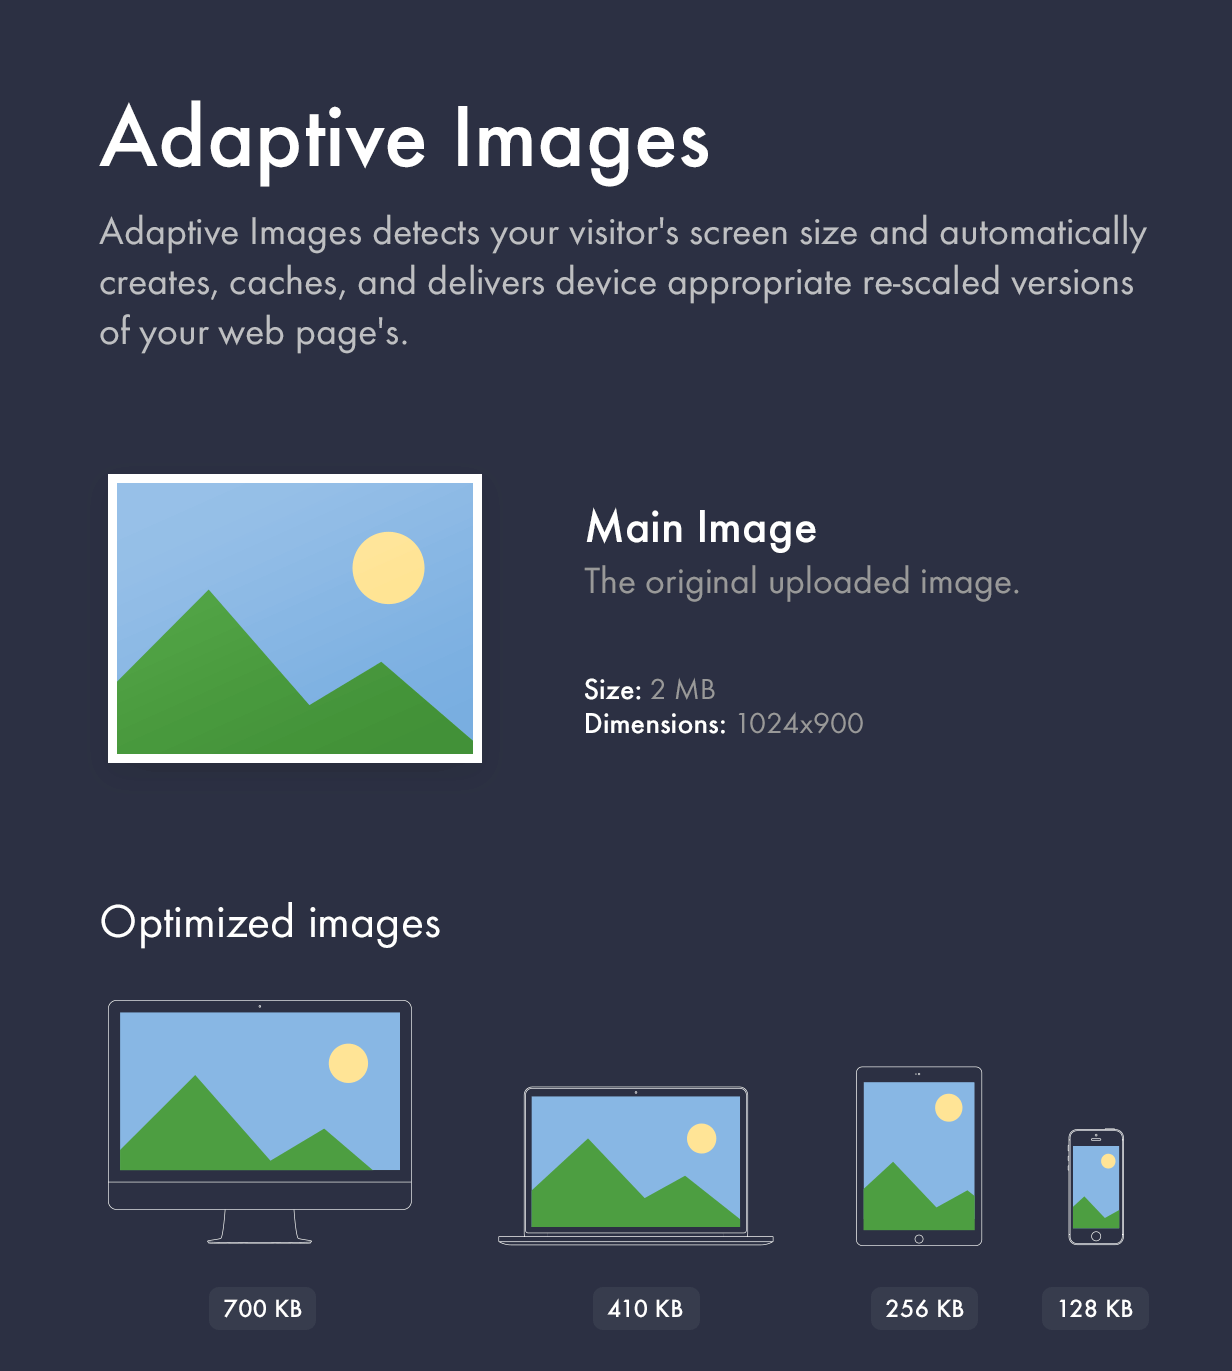 Adaptive Images technology